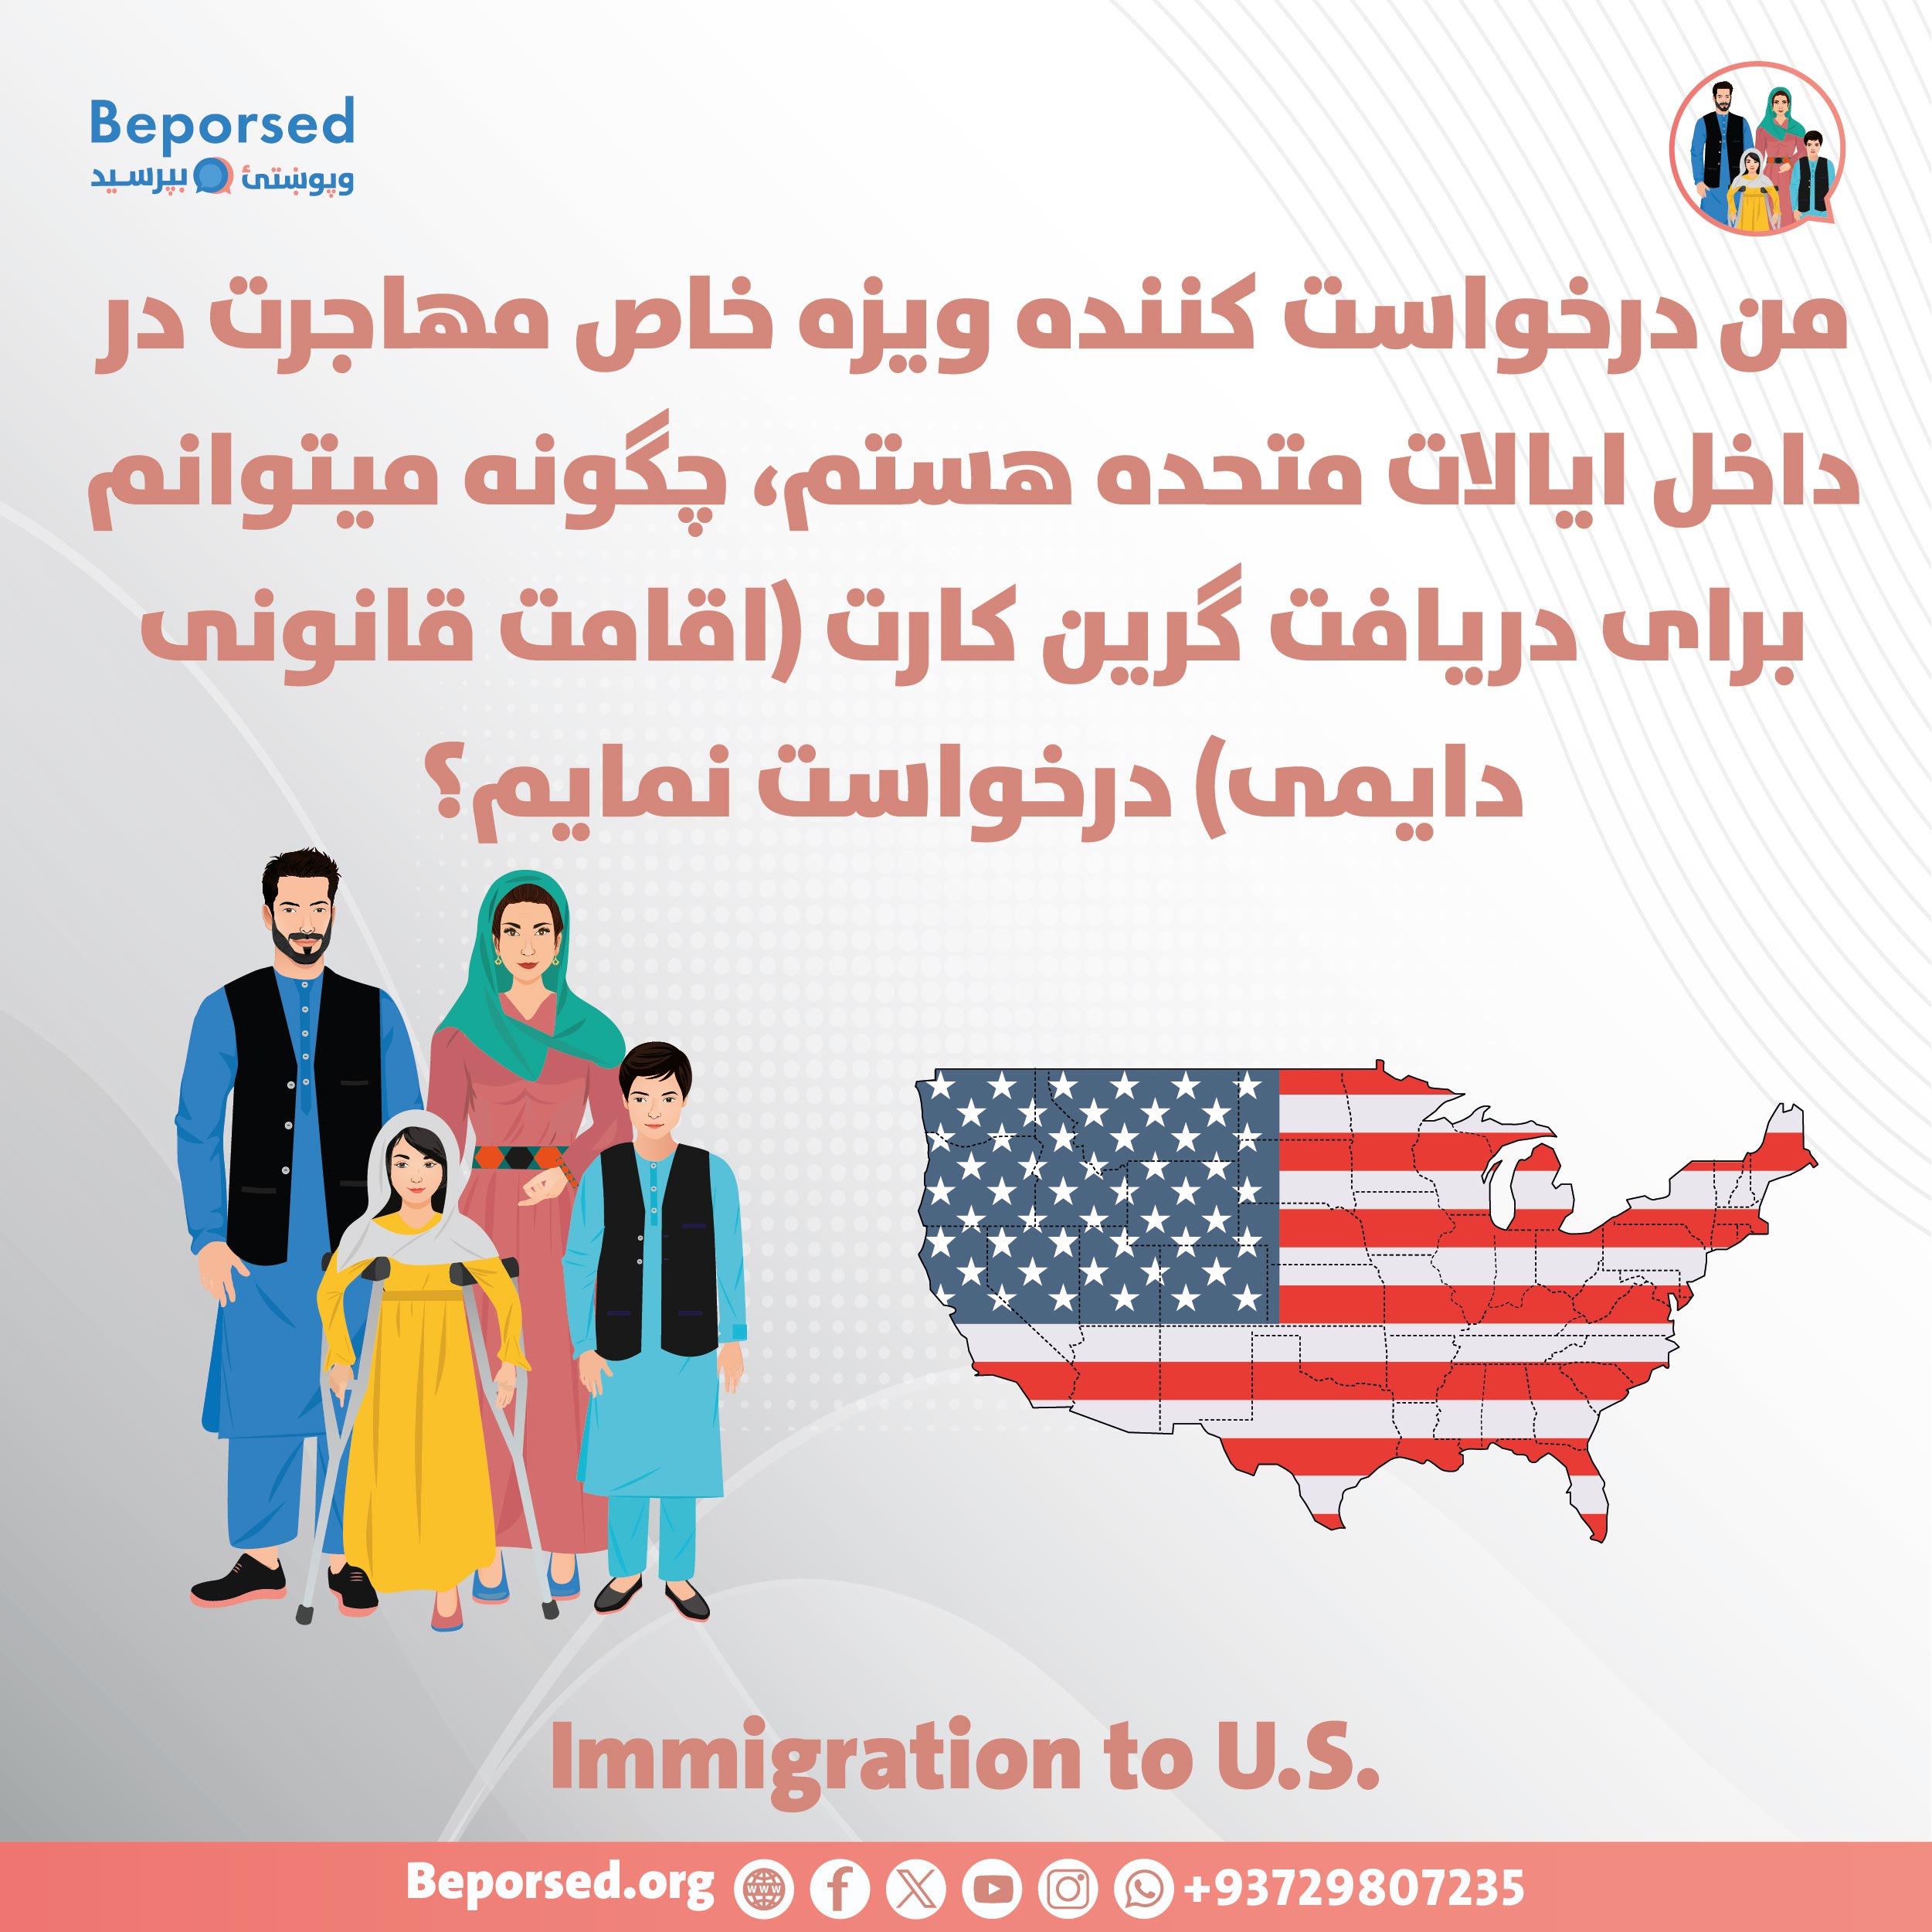 من درخواست کننده ویزه خاص مهاجرت در داخل ایالات متحده هستم، چگونه میتوانم برای دریافت گرین کارت (اقامت قانونی دایمی) درخواست نمایم؟-01.jpg